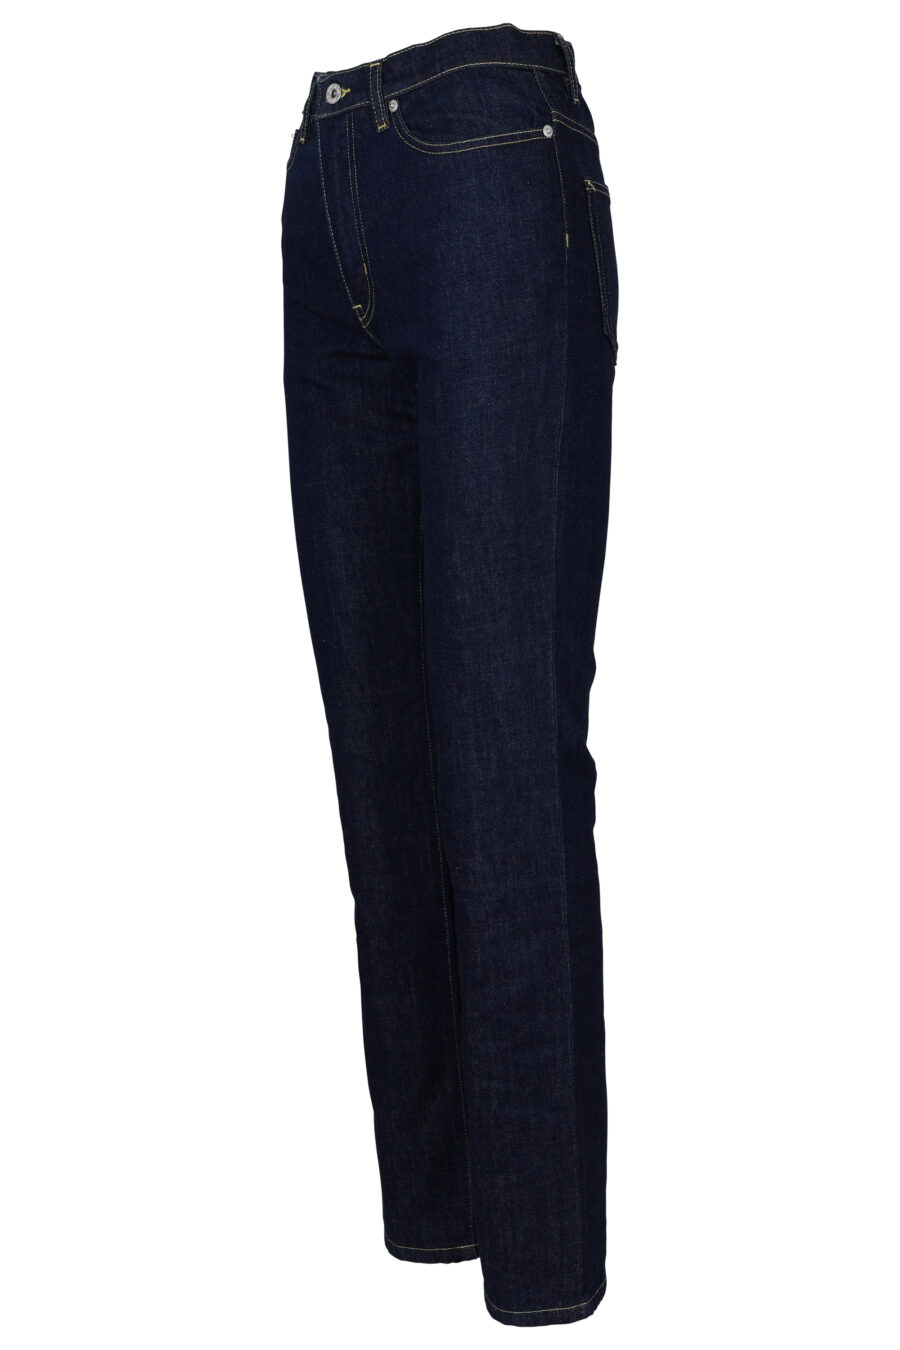 Pantalón vaquero azul oscuro recto con minilogo "kenzo paris" - 3612230511927 1